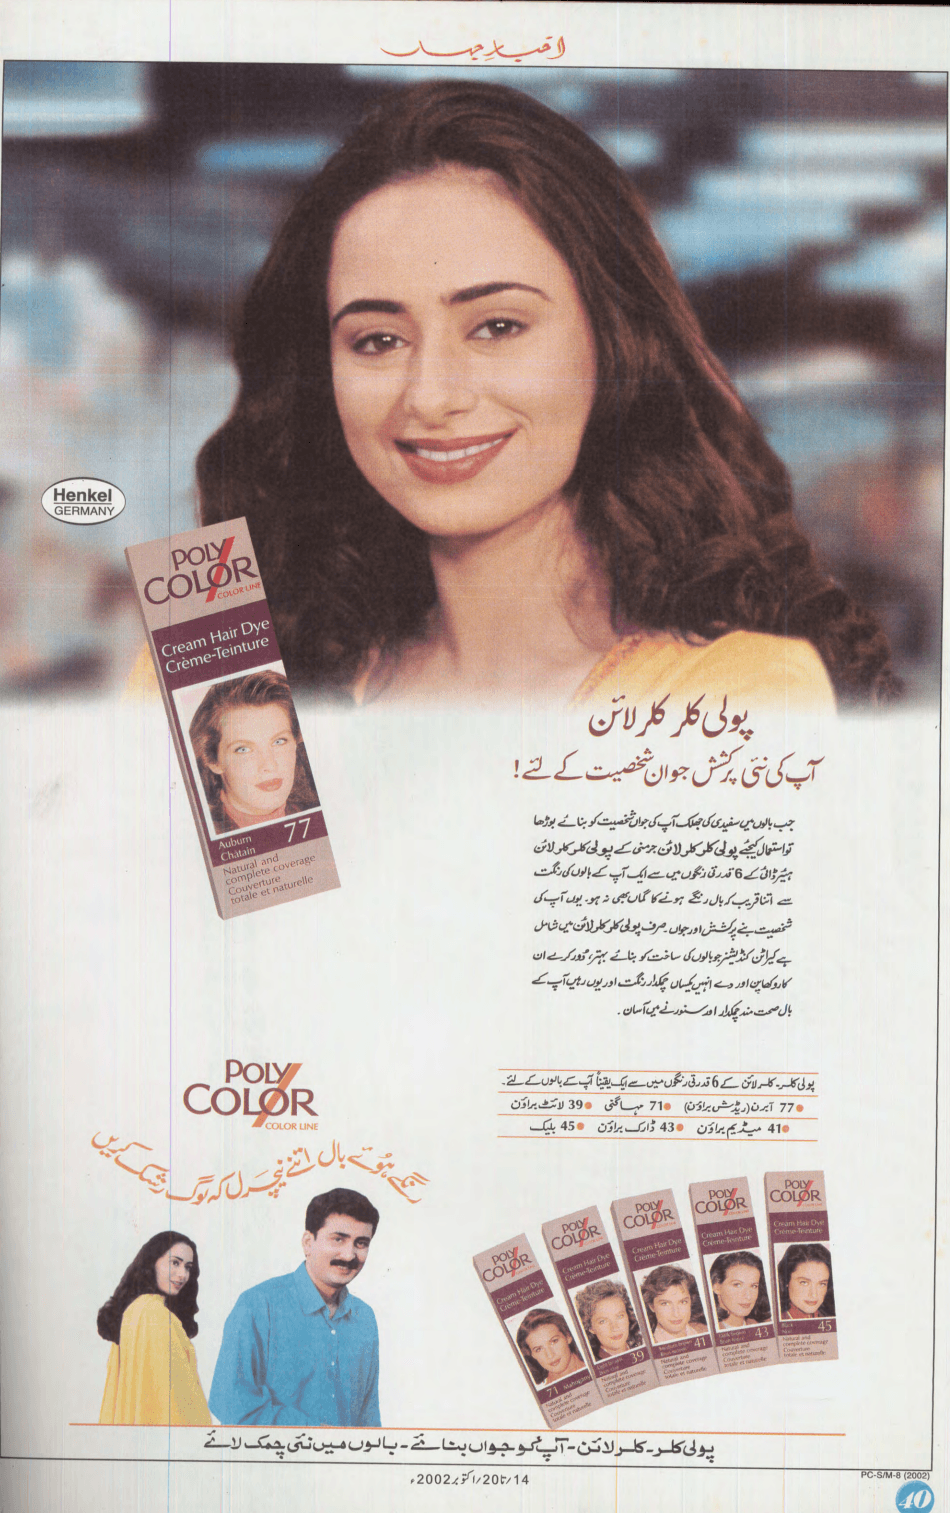 Akhbar-e-Jahan (Oct 14, 2002) - KHAJISTAN™